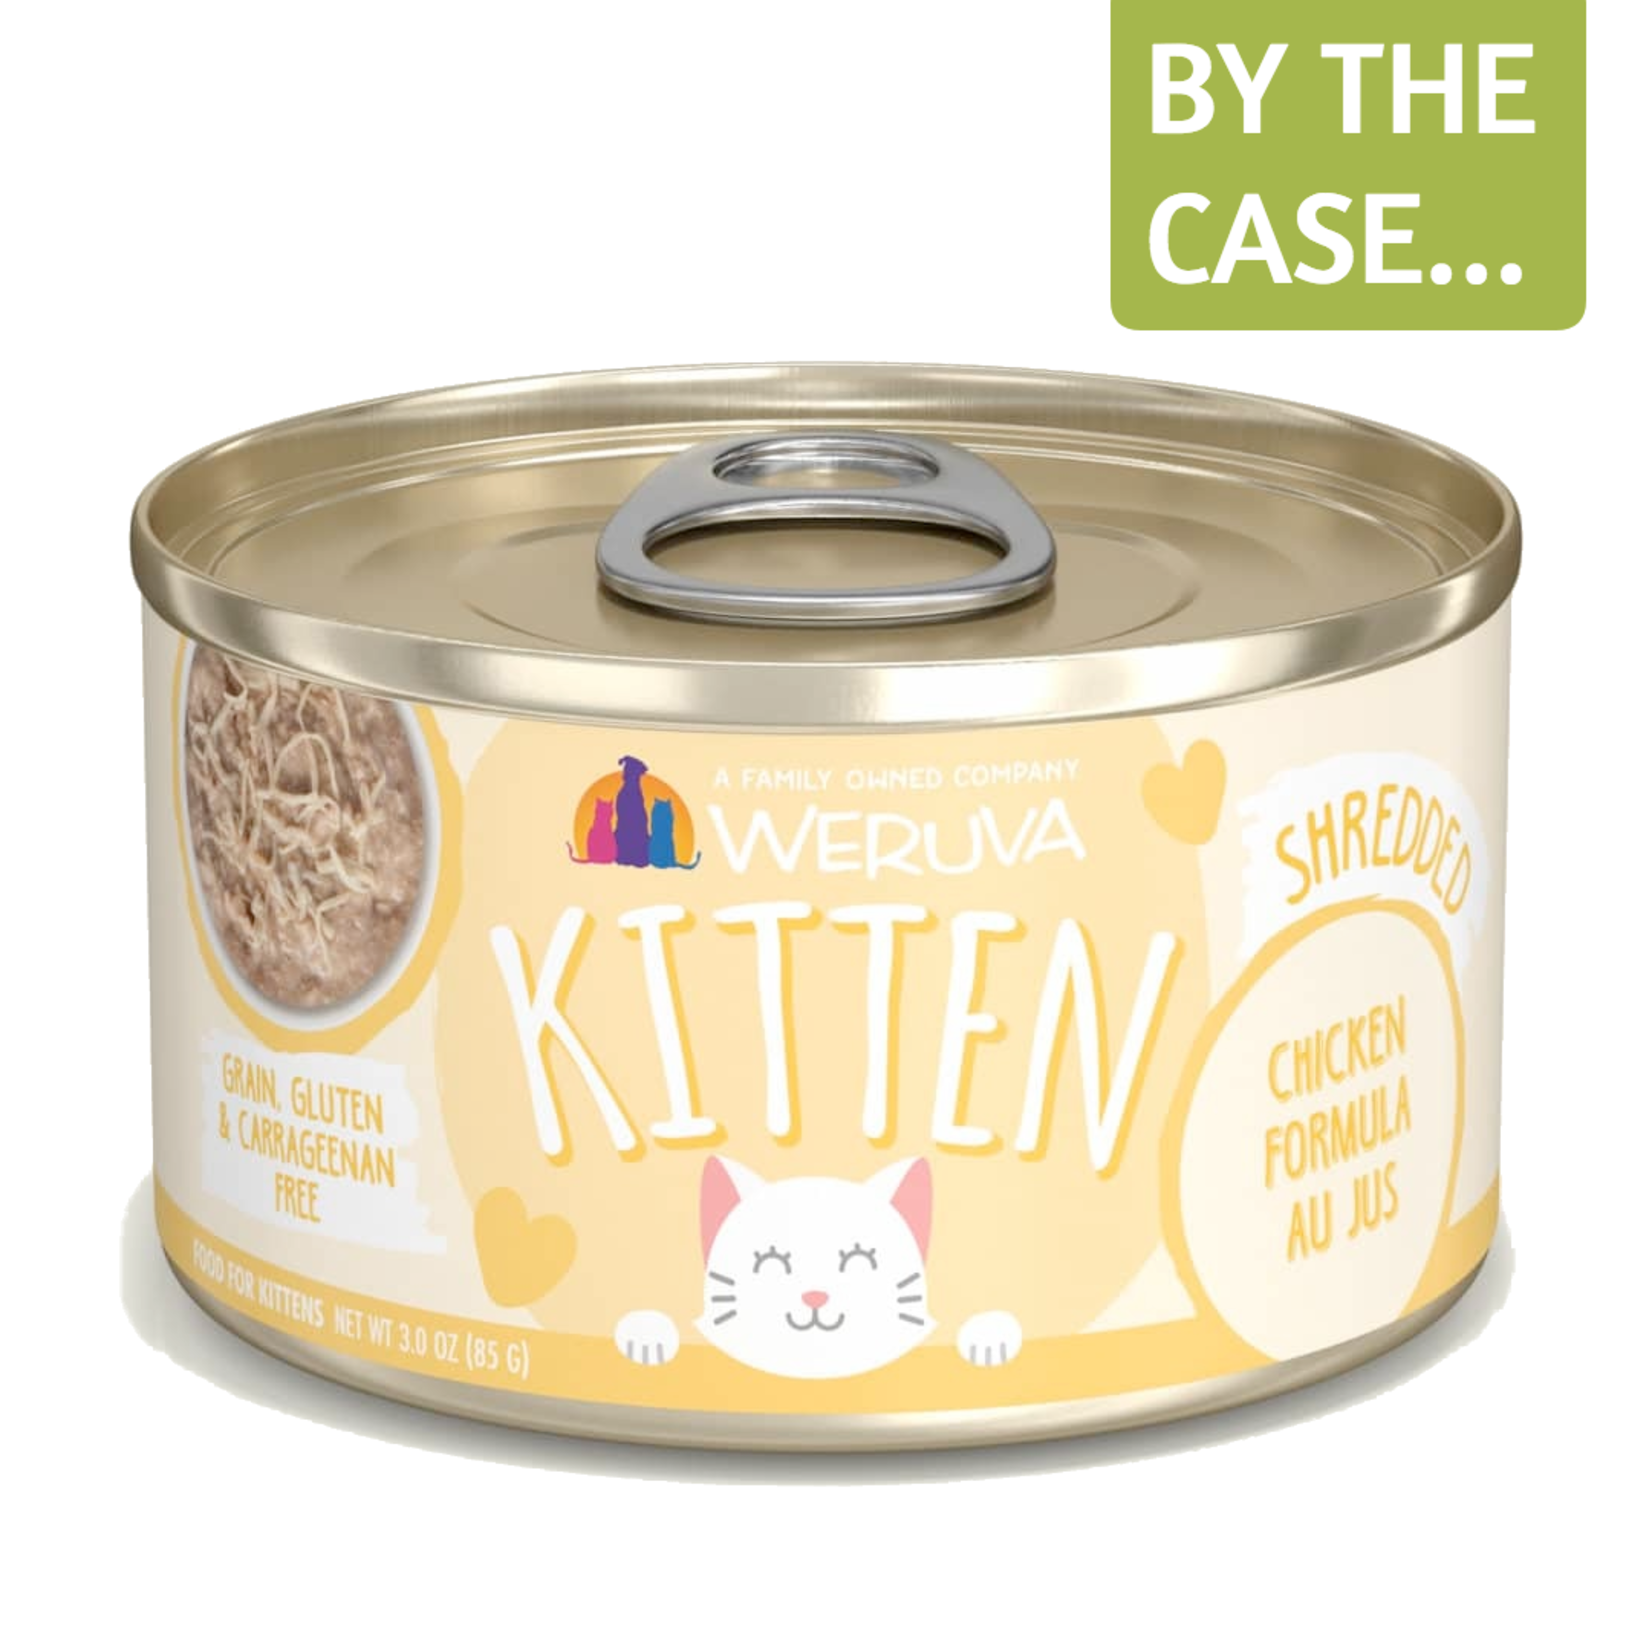 Weruva Weruva Kitten Wet Cat Food Chicken Formula au Jus 3.0oz Can Grain Free